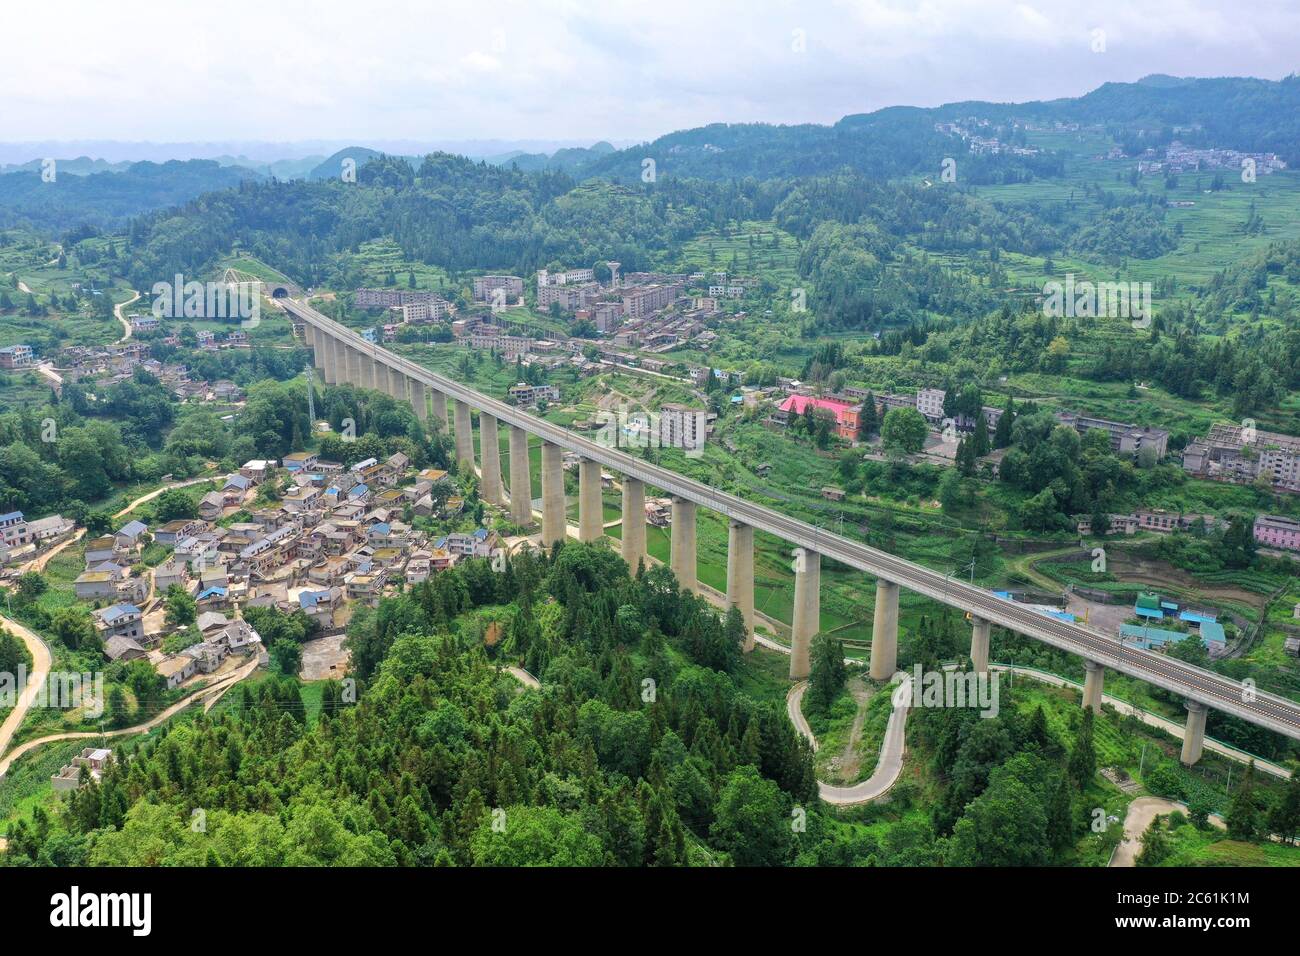 Liupanshui. Juli 2020. Luftaufnahme vom 6. Juli 2020 zeigt eine Eisenbahnbrücke entlang der Anshun-Liupanshui-Eisenbahn in der südwestlichen chinesischen Provinz Guizhou. Die Intercity-Bahn Anshun-Liupanshui mit einer Geschwindigkeit von 250 km/h wird zur Eröffnung vorbereitet. Die Eisenbahn wird die Fahrzeit zwischen Guiyang und Liupanshui von den aktuellen 3.5 Stunden auf etwa 1 Stunde verkürzen, und Liupanshui City wird vollständig mit dem nationalen Hochgeschwindigkeitsbahnnetz verbunden sein. Quelle: Liu Xu/Xinhua/Alamy Live News Stockfoto